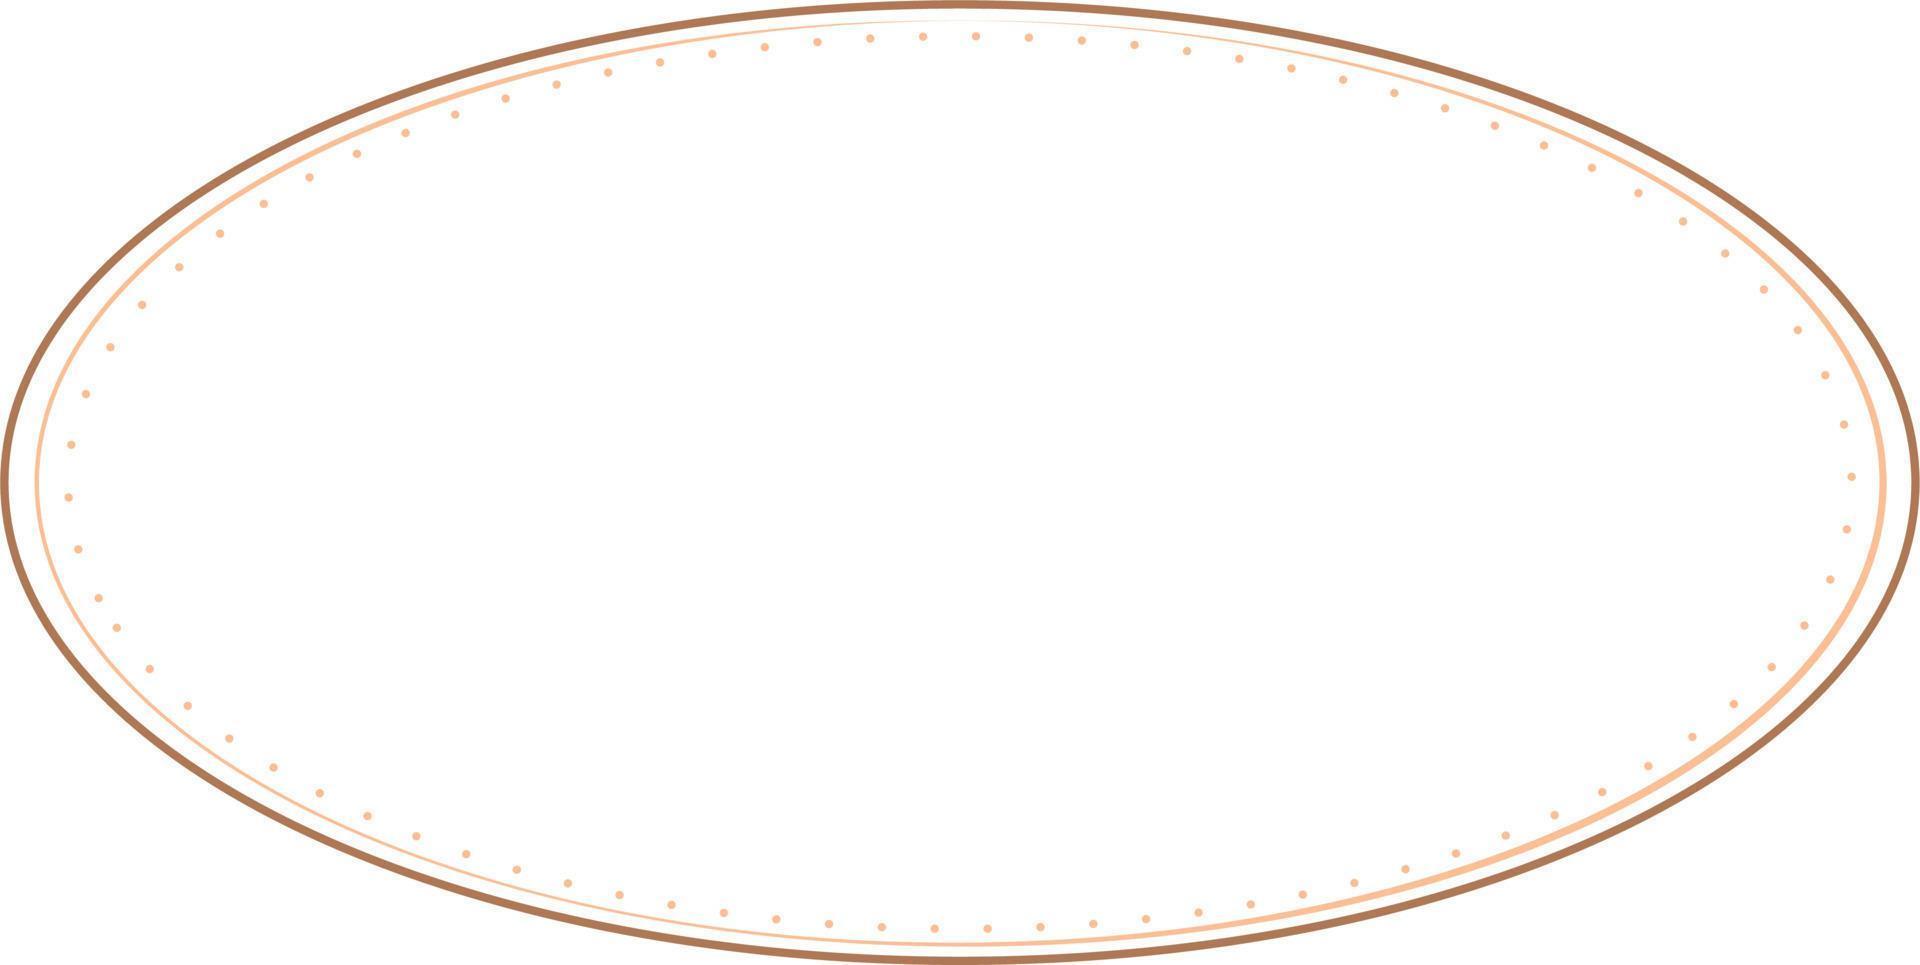 marcos de borde ovalados aislados sobre fondo blanco. elemento de diseño de moda para marco de borde, logotipo, tatuaje de apagón, símbolo, web, impresiones, carteles, plantilla, patrón y fondo abstracto vector